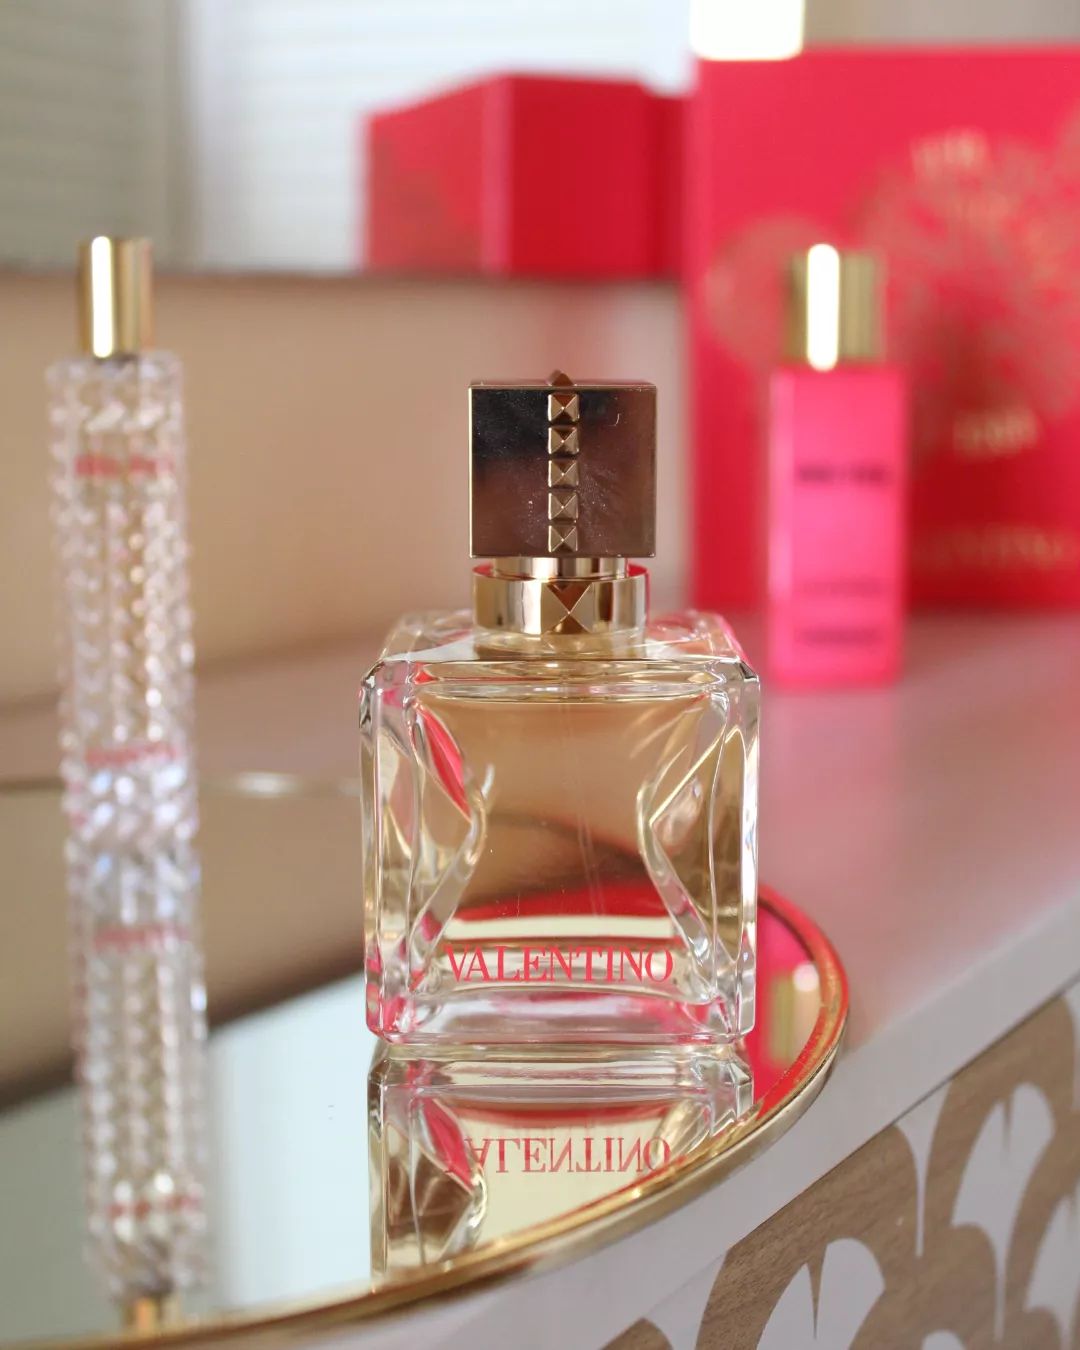 〰️ Parfum n°3 〰️

Voce viva de Valentino, le petit dernier arrivé dans ma collection 🤩

Encore un favoris que j'adore. Je trouve qu'il a une note exotique 🍍en tout cas sur ma peau 😀

Comme vous le savez sûrement, un parfum aura une odeur différente sur chaque personne...

Vous l'avez déjà senti celui-ci ?

.
.
.
.

#valentino #voceviva #vocevivavalentino #ladygaga #parfum #parfumerie #parfumcollection #parfumaddict #parfumoriginal #sephora #nocibe #marionnaud #beauty #belleaunaturel #beautiful #beauté #cosmetique #senteur #odeur #feminin #femme #blogueusefrancaise #blogueuselifestyle #blogueusebeauté #love #partage #fragrance #picoftheday #happy #photodujour📸